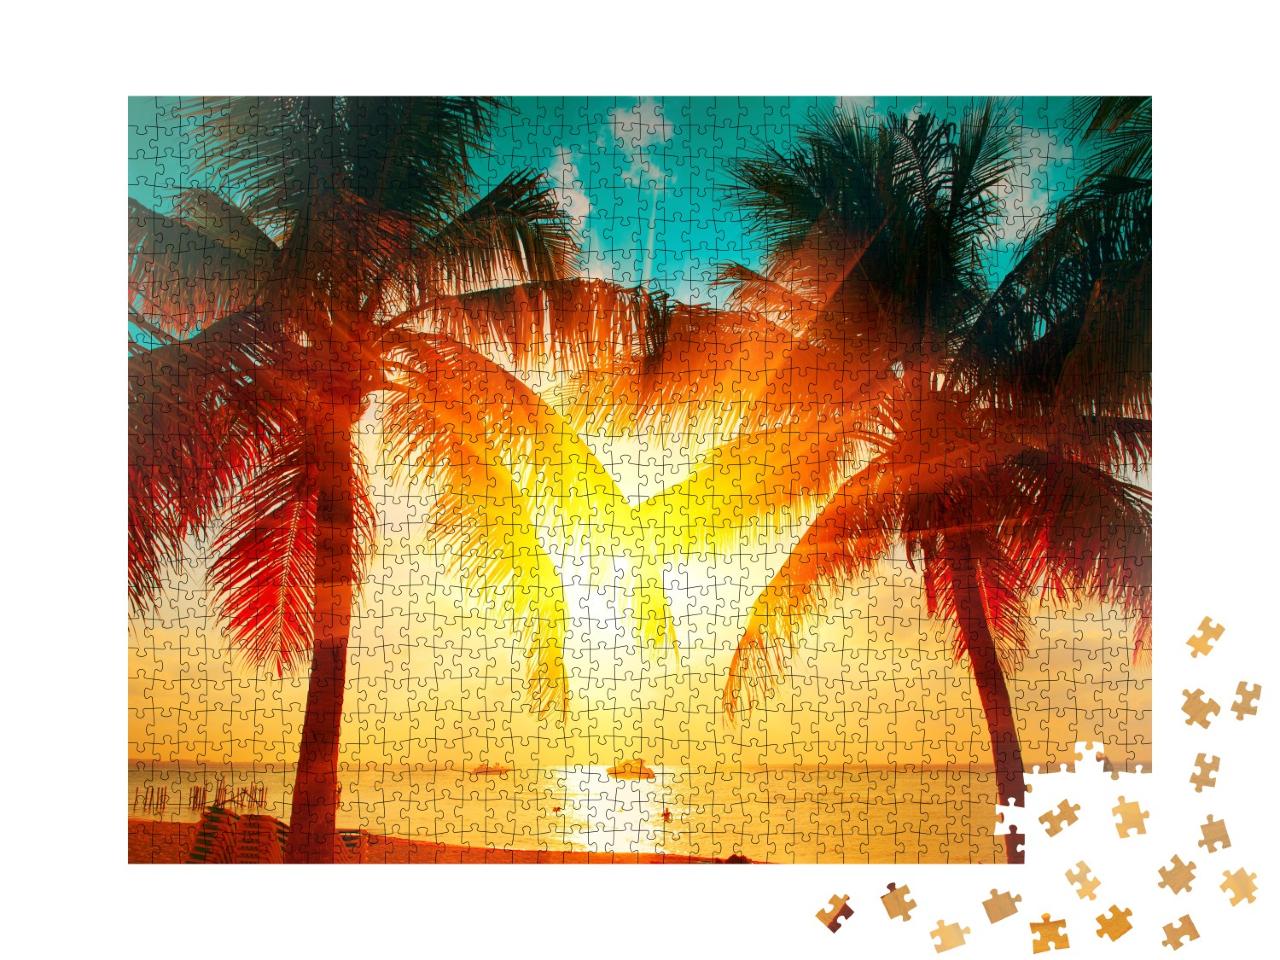 Puzzle de 1000 pièces « Coucher de soleil sur une plage de palmiers »